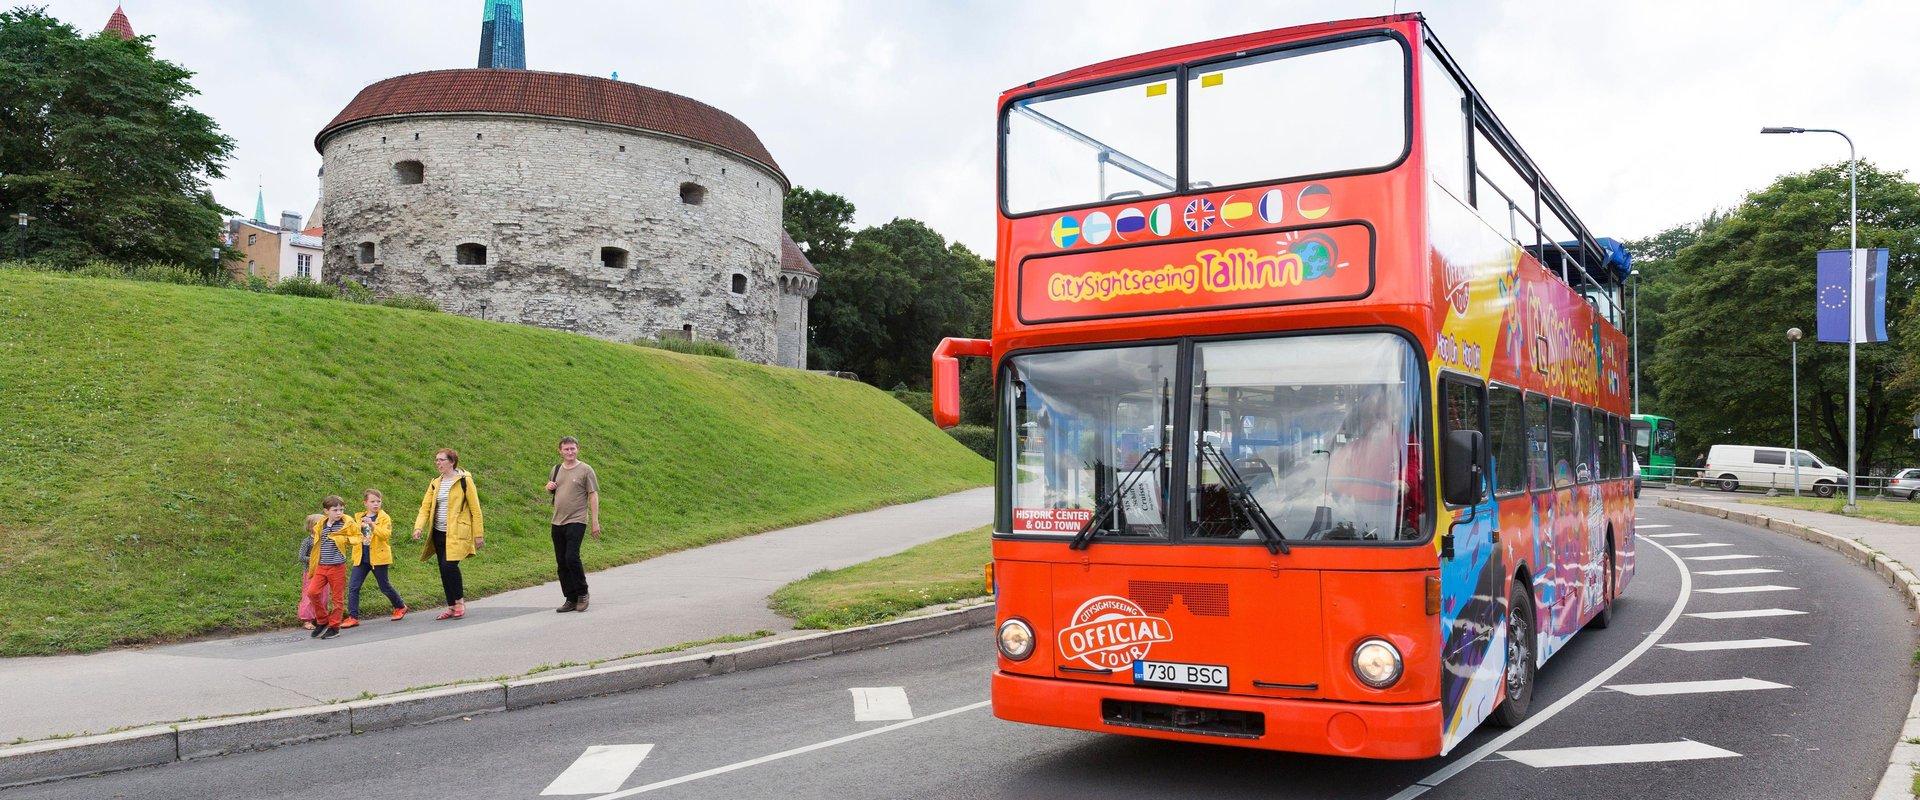 CitySightseeing Tallinn - Cabriobustour